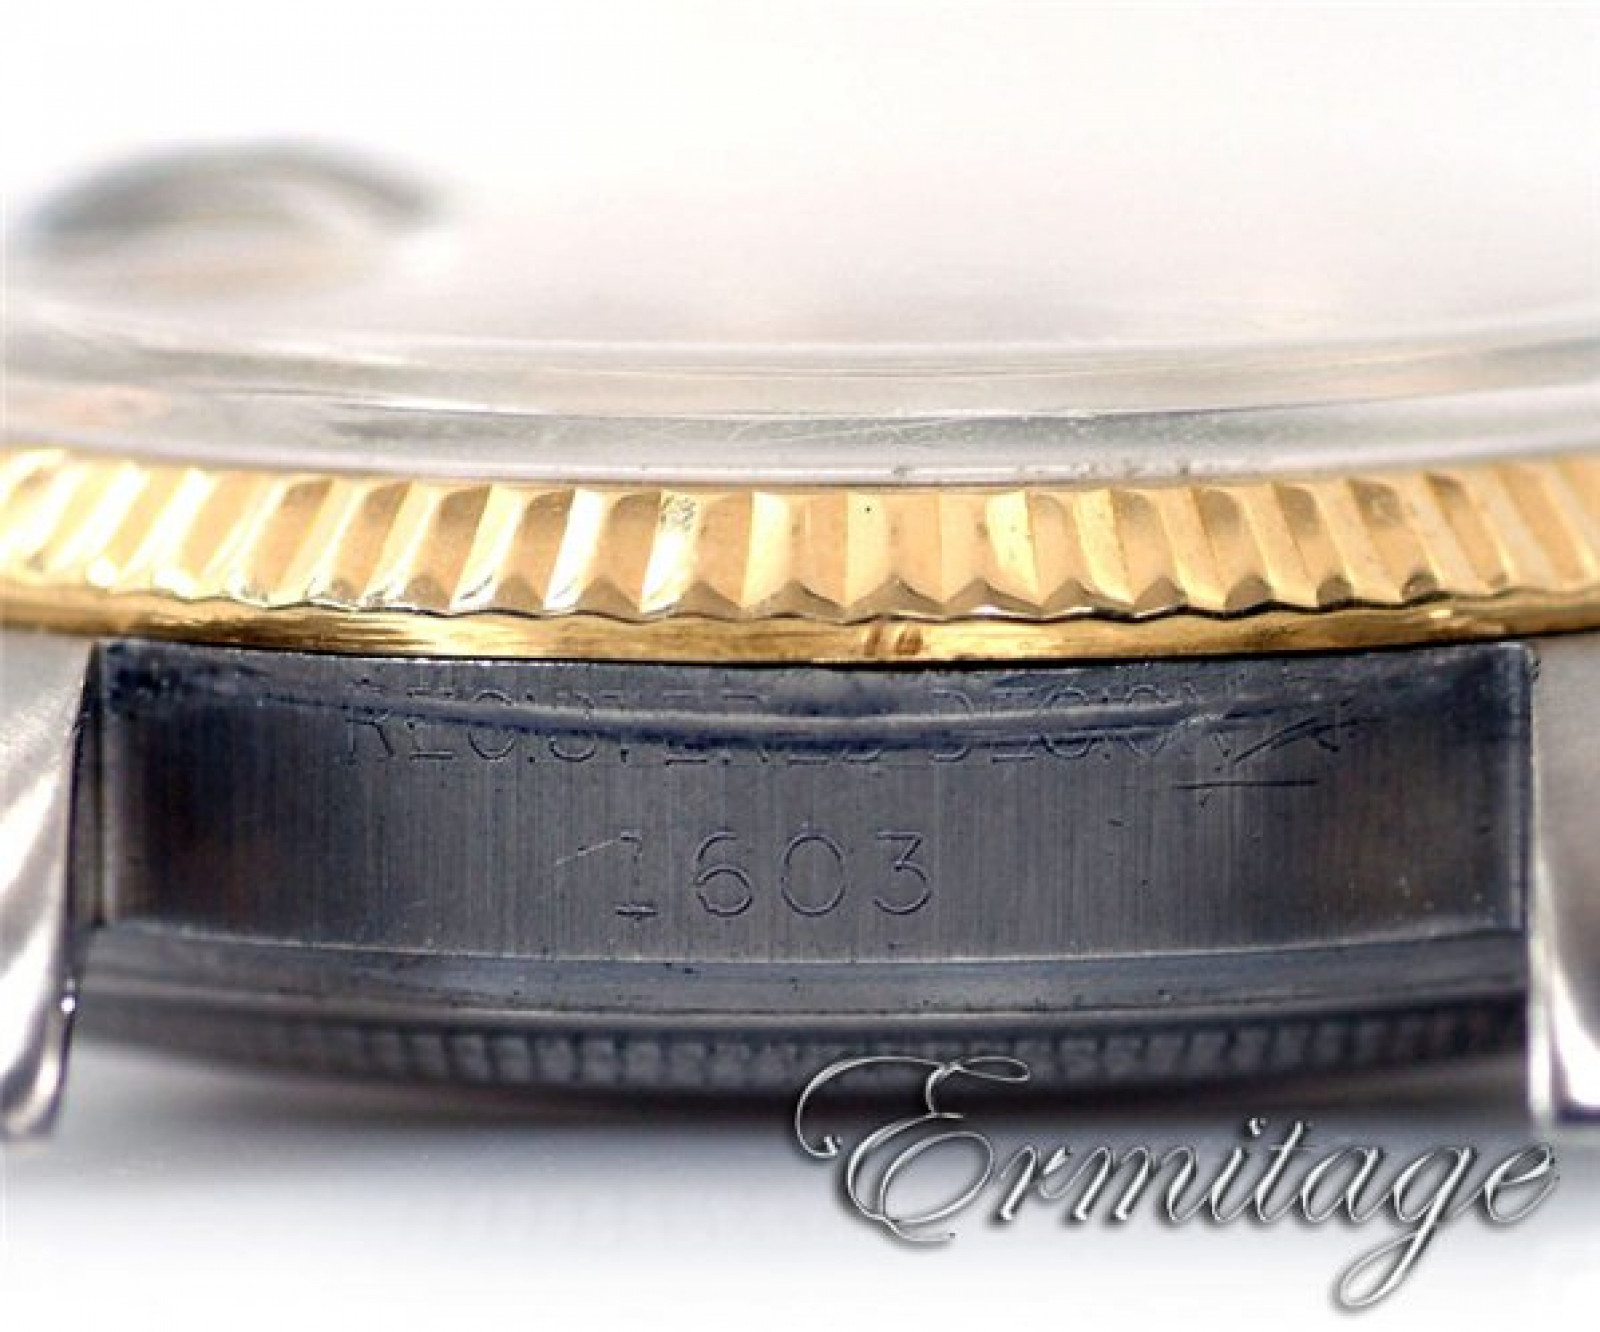 Vintage Rolex Datejust 1603 Gold & Steel Year 1968